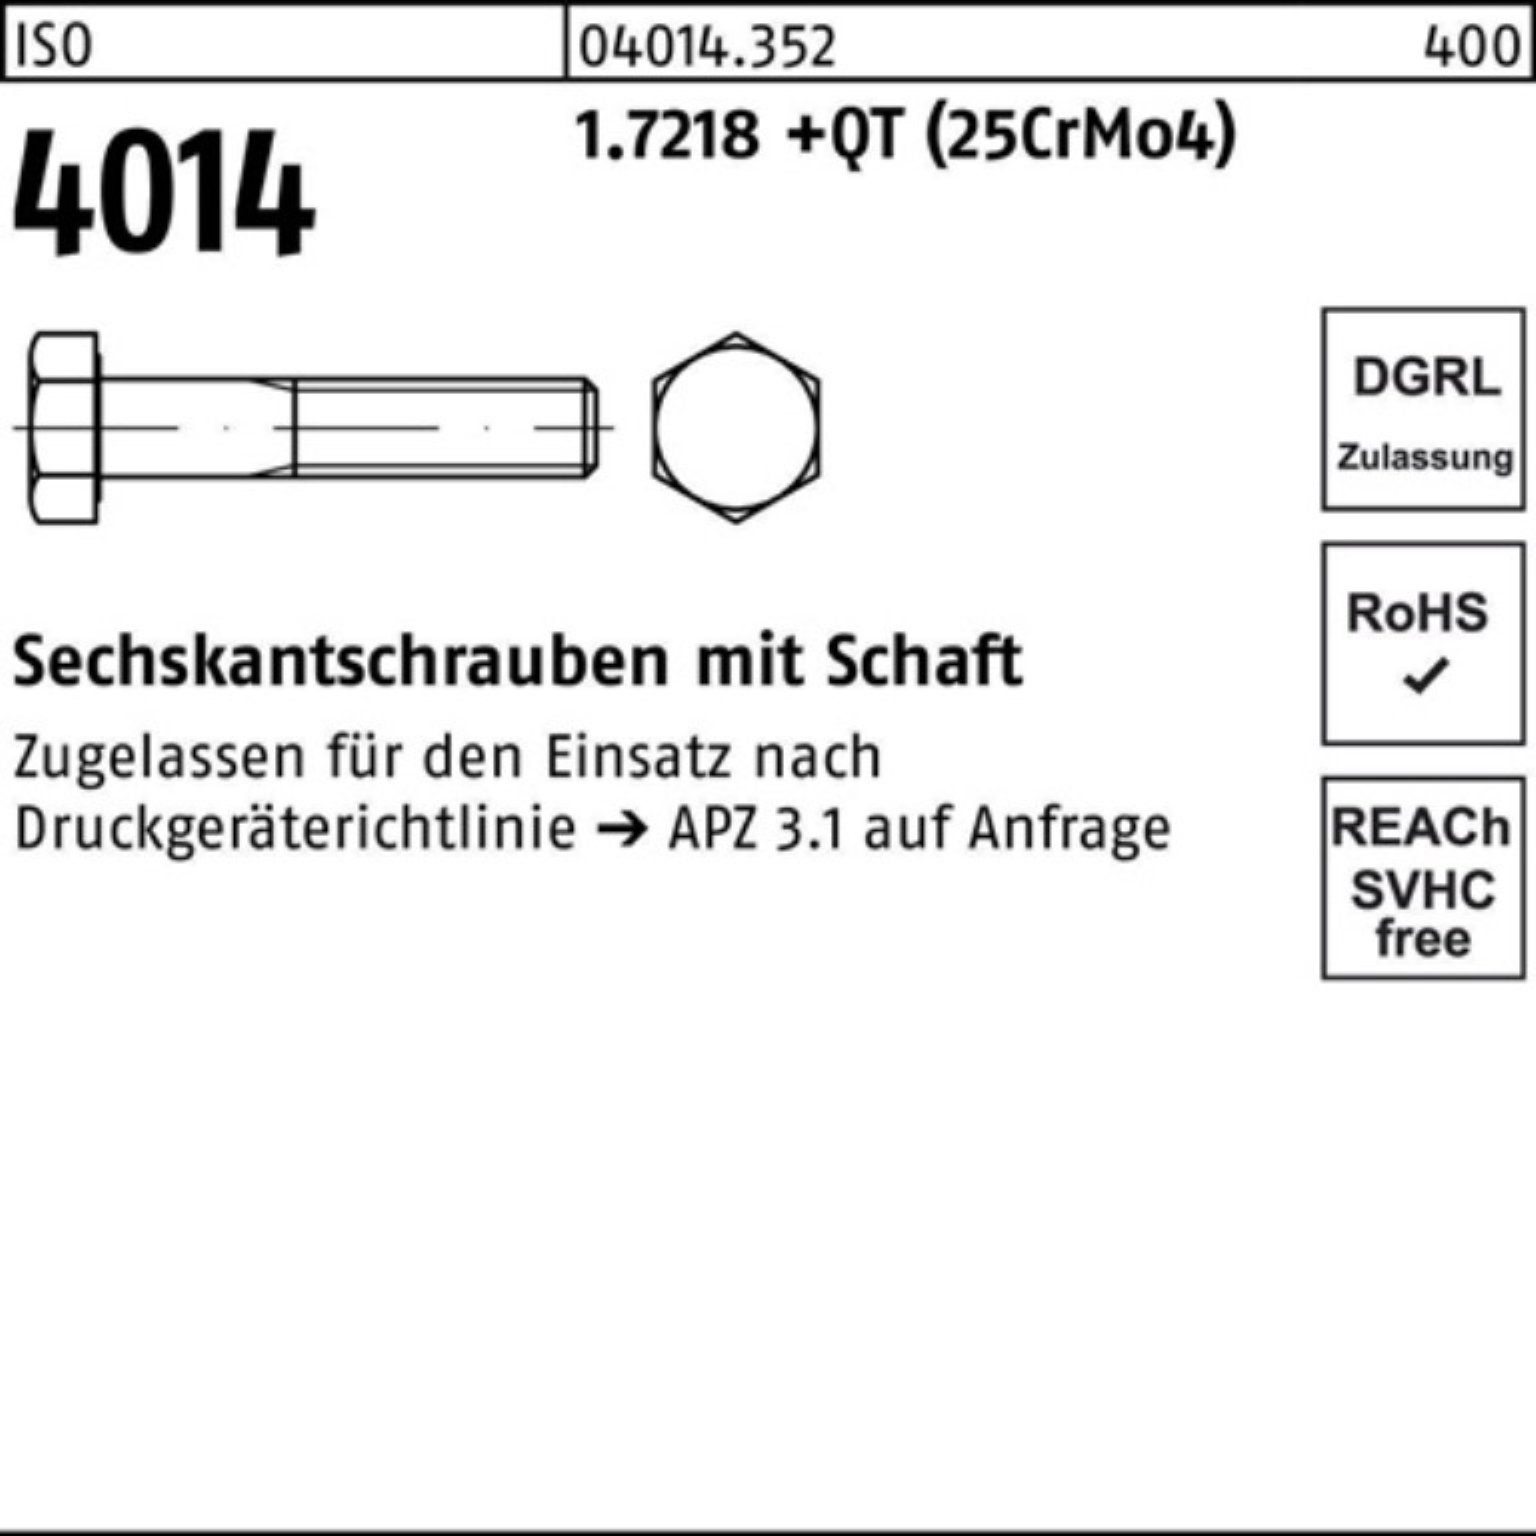 4014 1.7218 M24x ISO Bufab 150 Schaft +QT Sechskantschraube Pack Sechskantschraube 100er (25Cr